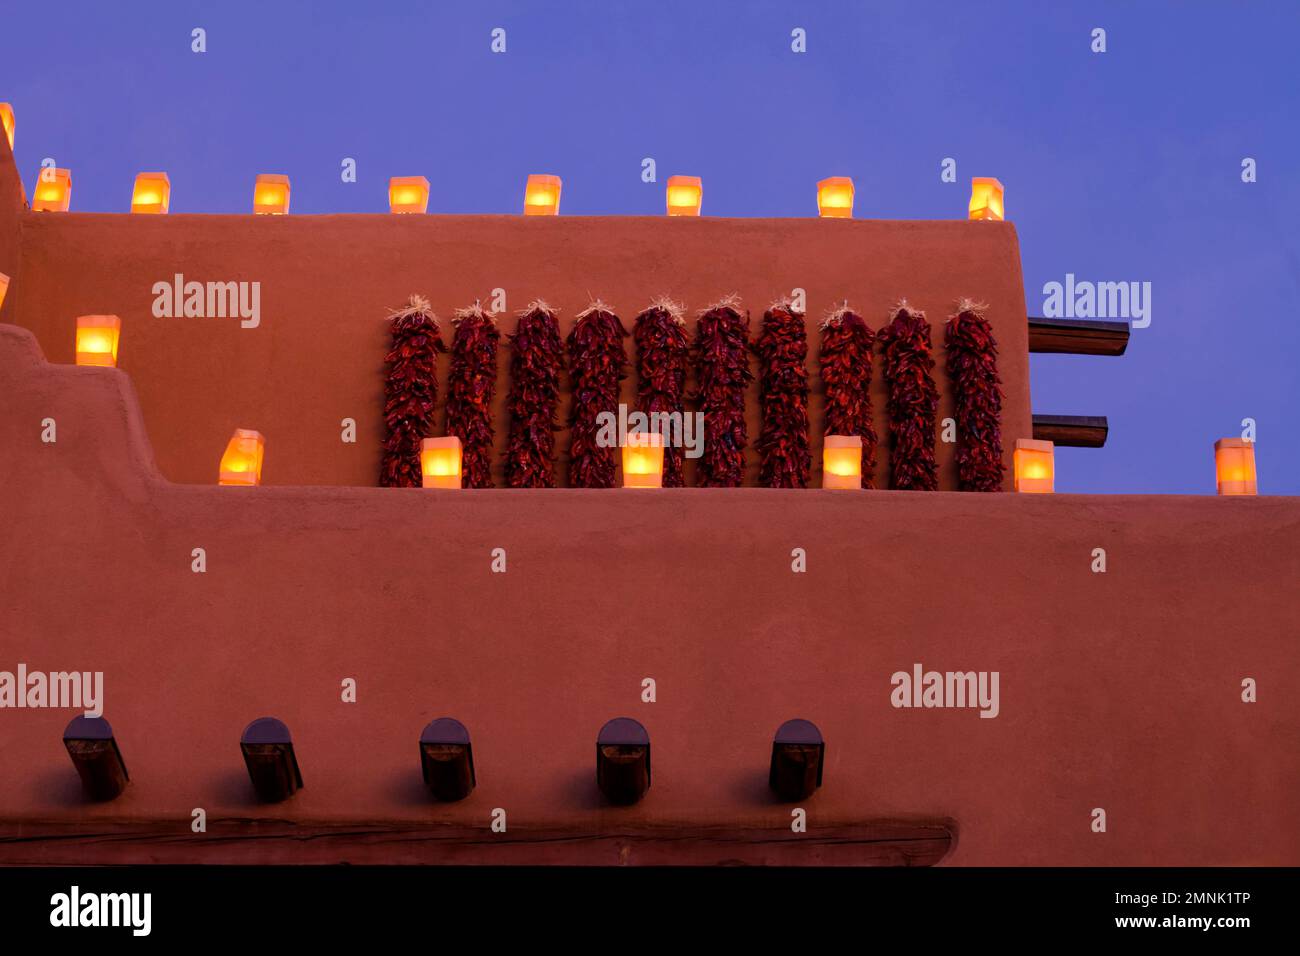 Santa Fe, Nouveau-Mexique, États-Unis. Les farolitos traditionnels illuminent les structures adobe. Banque D'Images